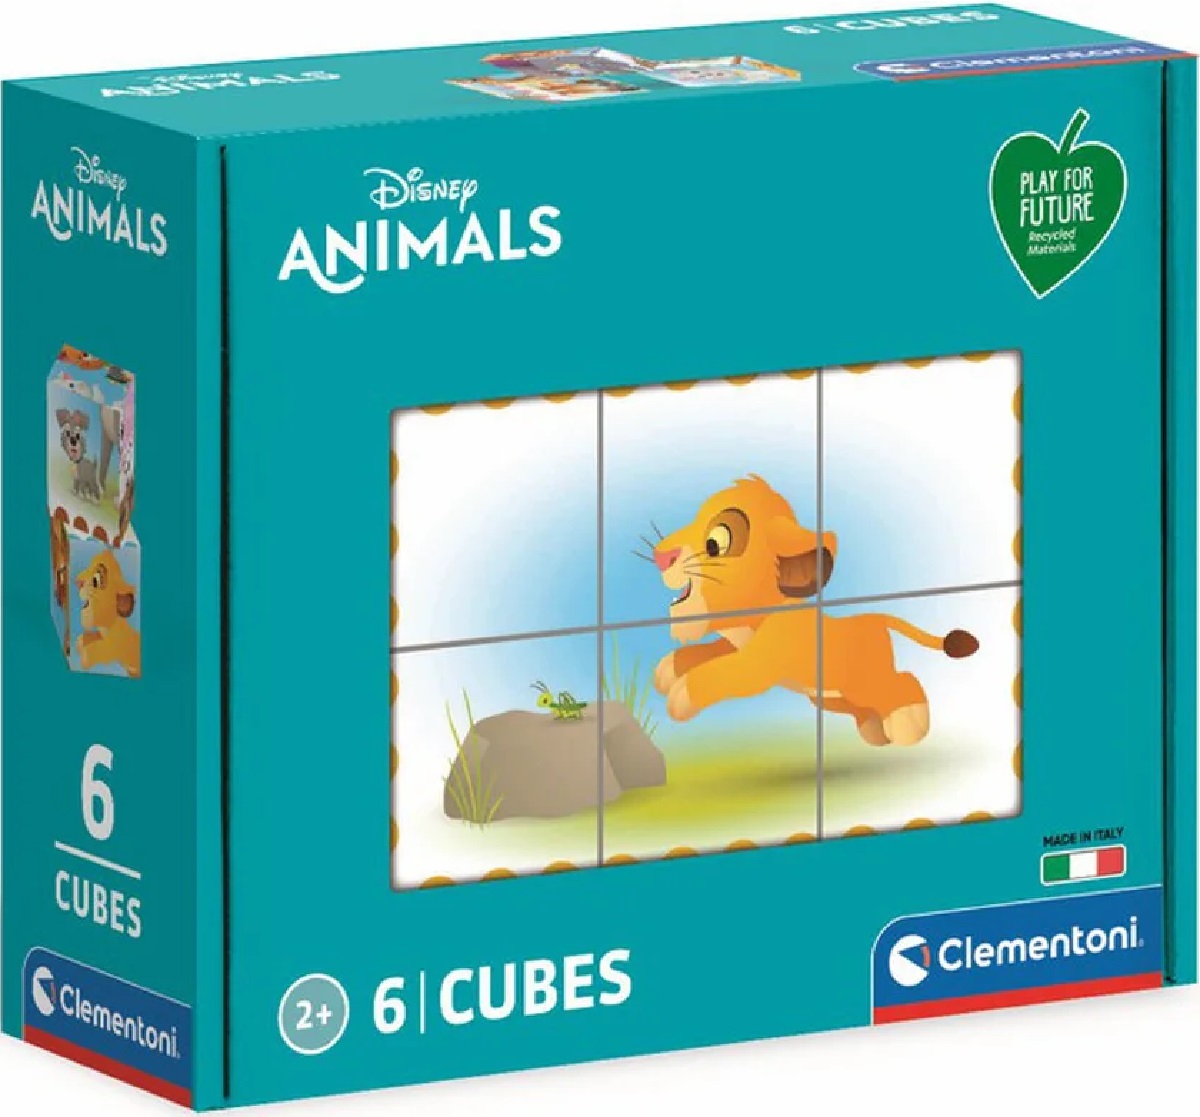 Puzzle 6 cuburi. Disney Animals